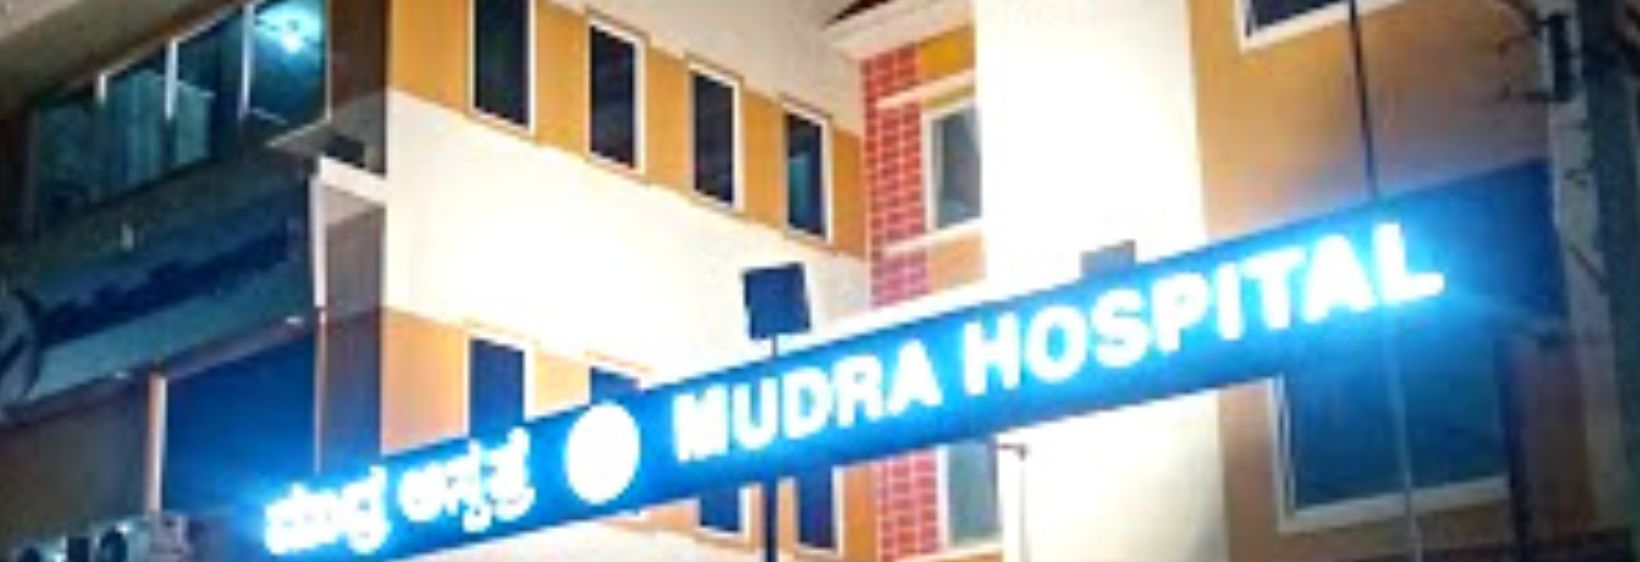 Mudra College of Nursing - Tumkur